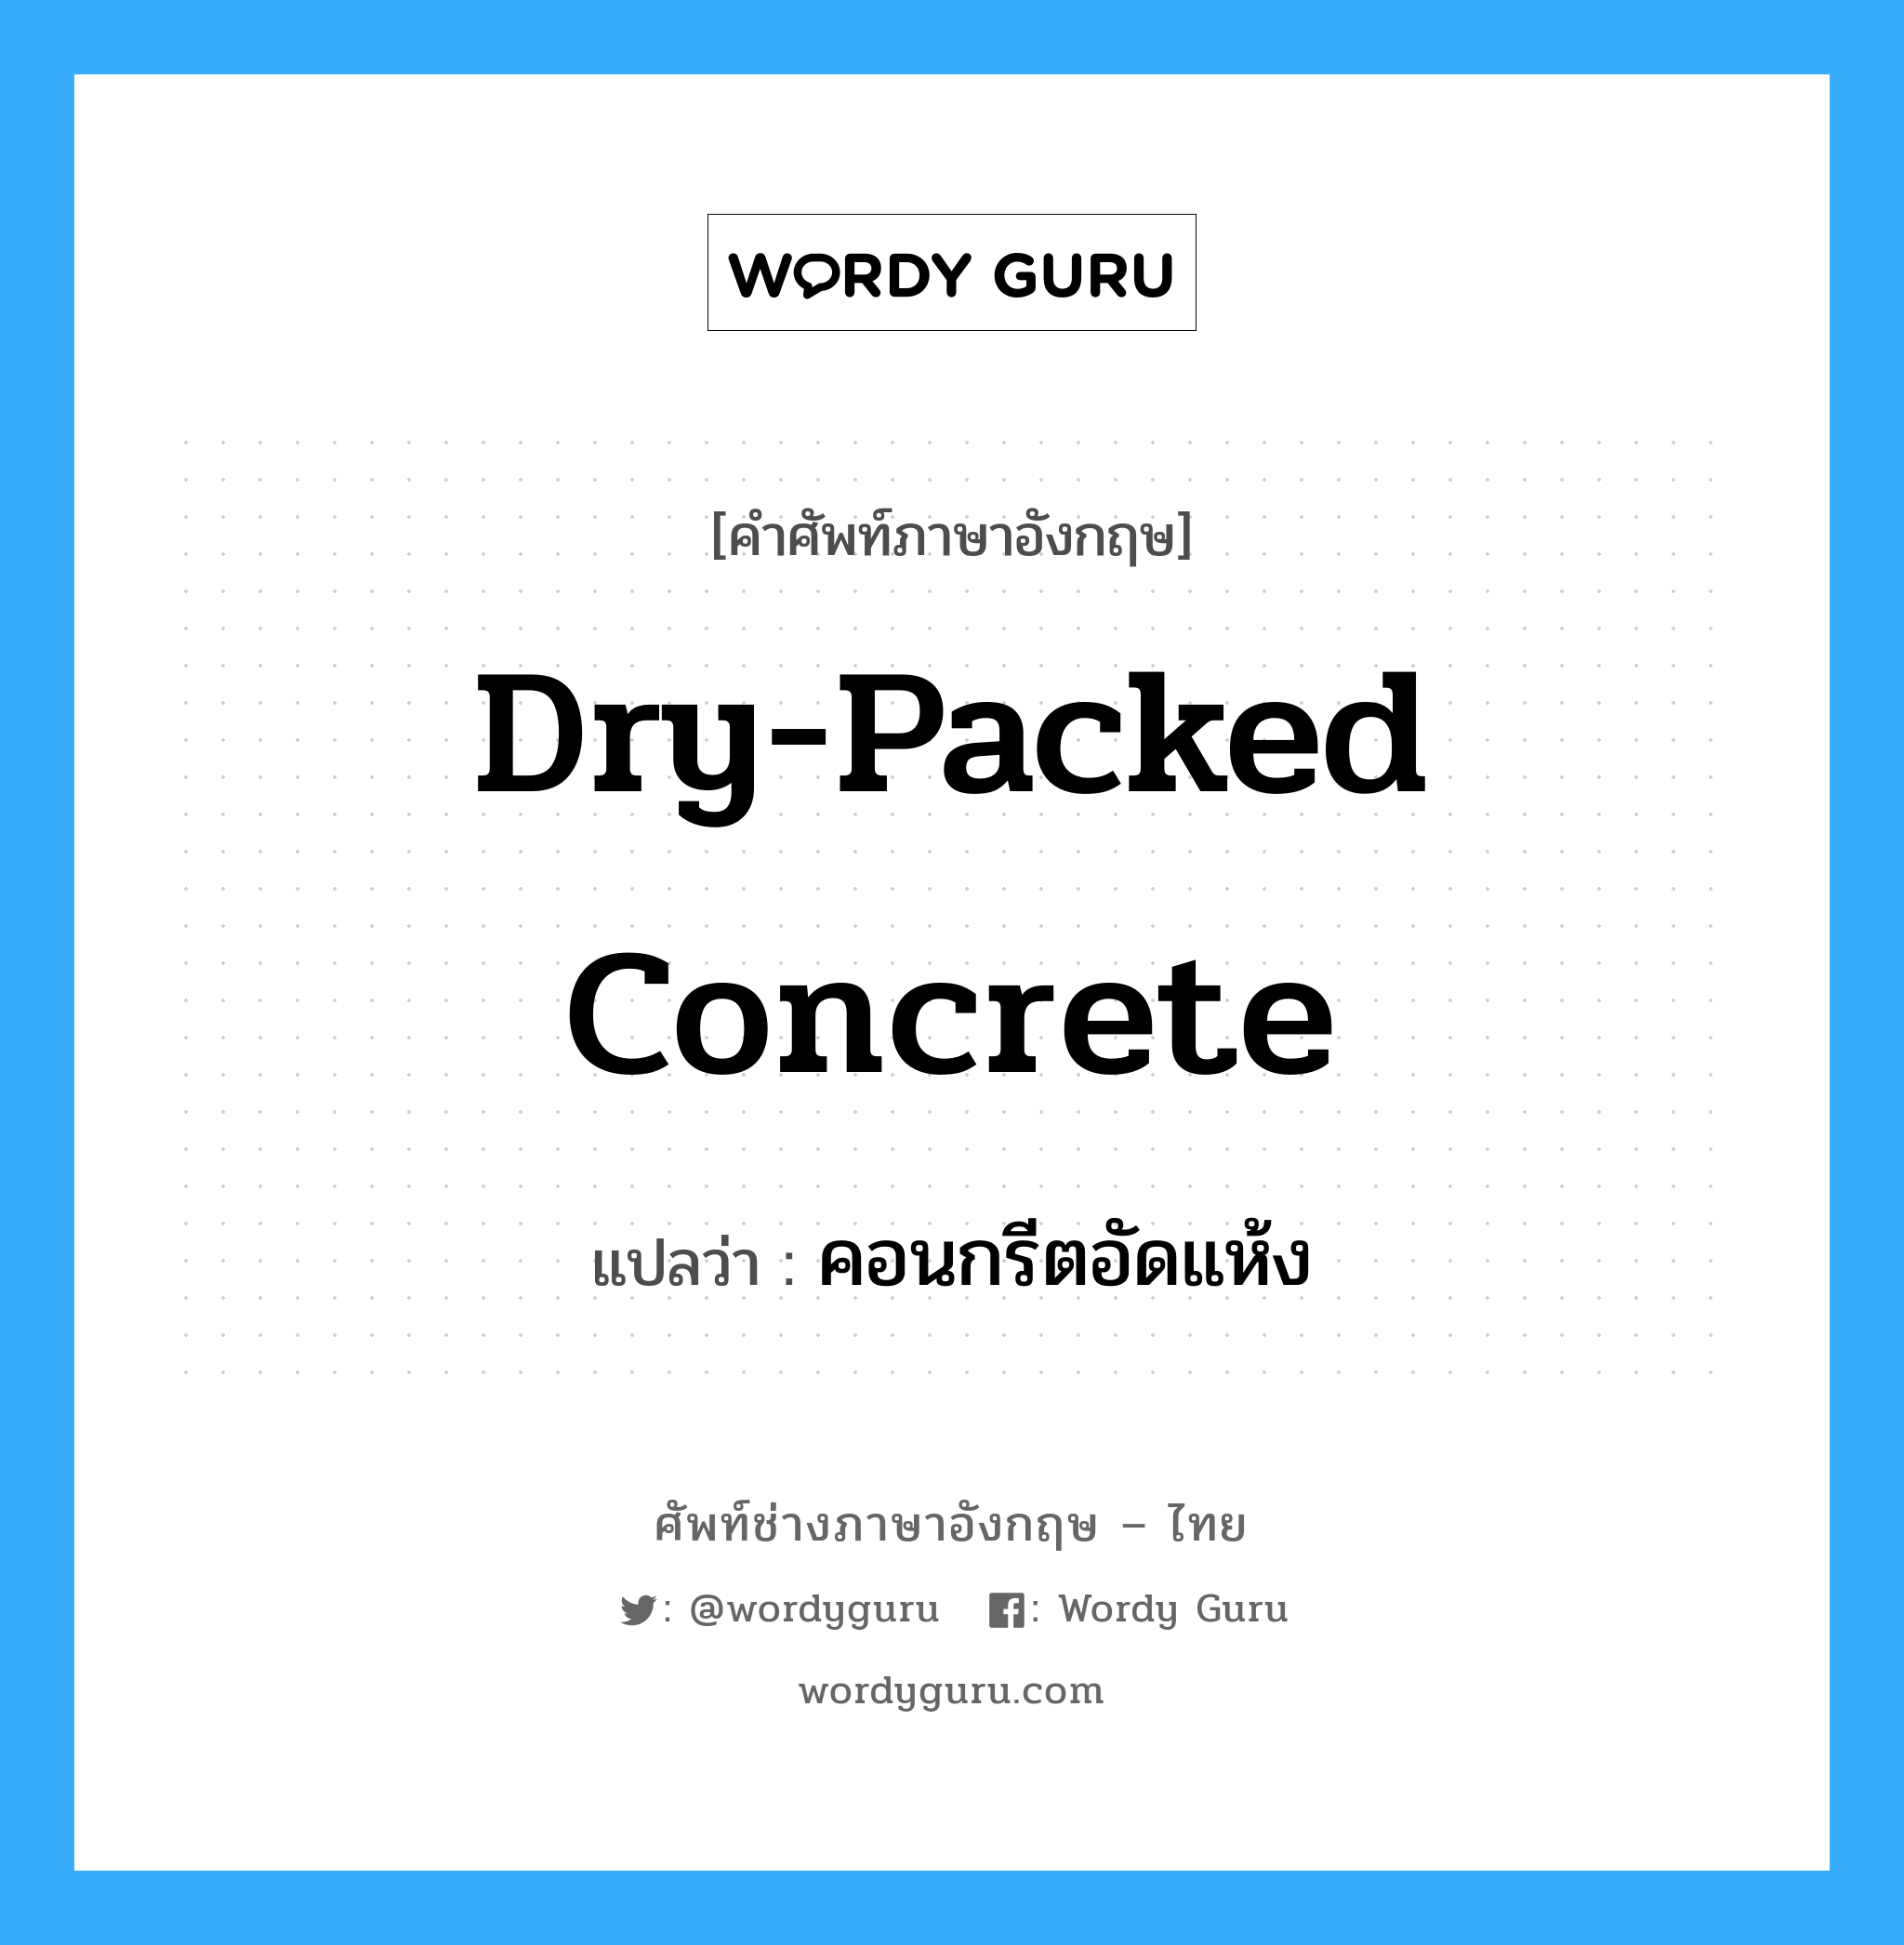 dry-packed concrete แปลว่า?, คำศัพท์ช่างภาษาอังกฤษ - ไทย dry-packed concrete คำศัพท์ภาษาอังกฤษ dry-packed concrete แปลว่า คอนกรีตอัดแห้ง